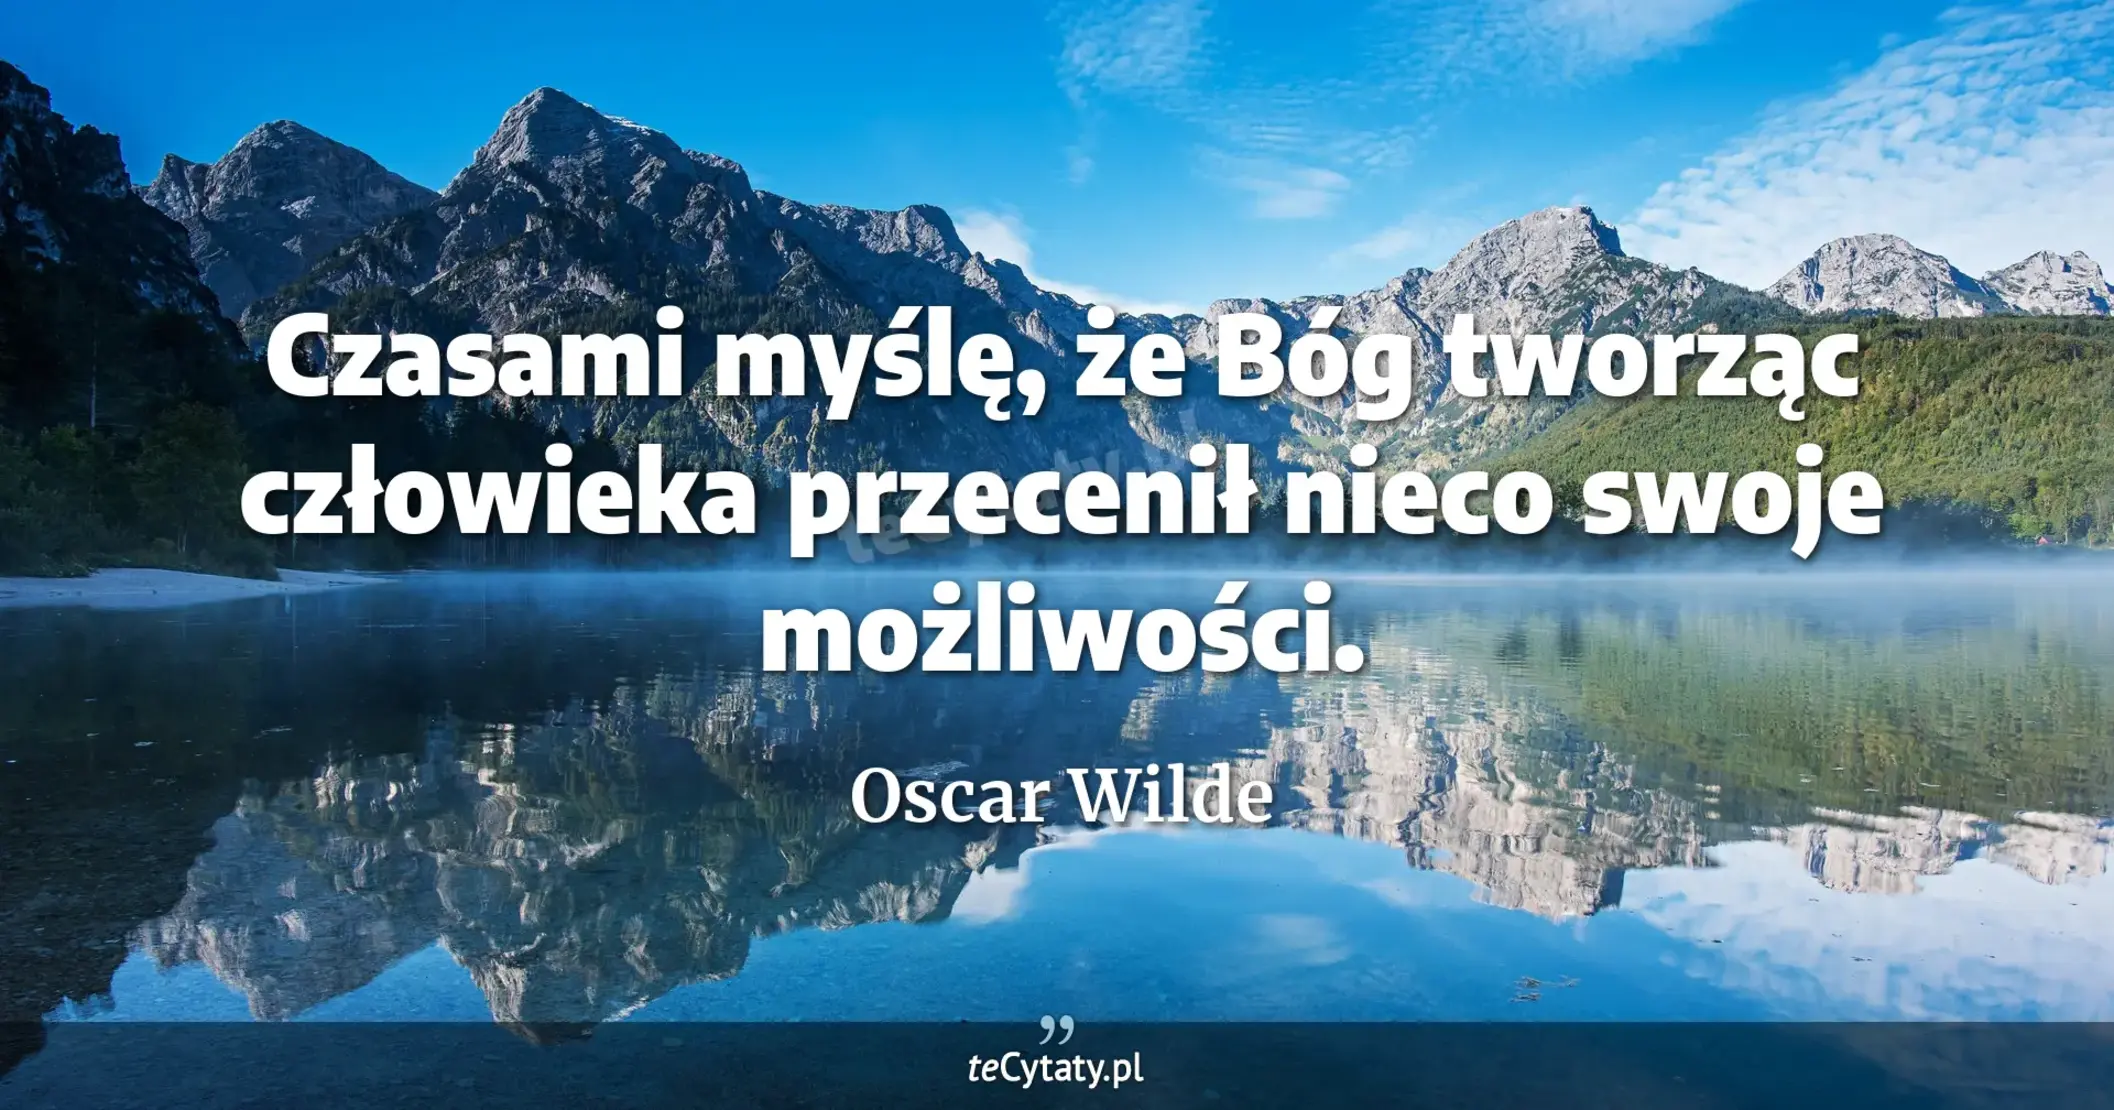 Czasami myślę, że Bóg tworząc człowieka przecenił nieco swoje możliwości. - Oscar Wilde